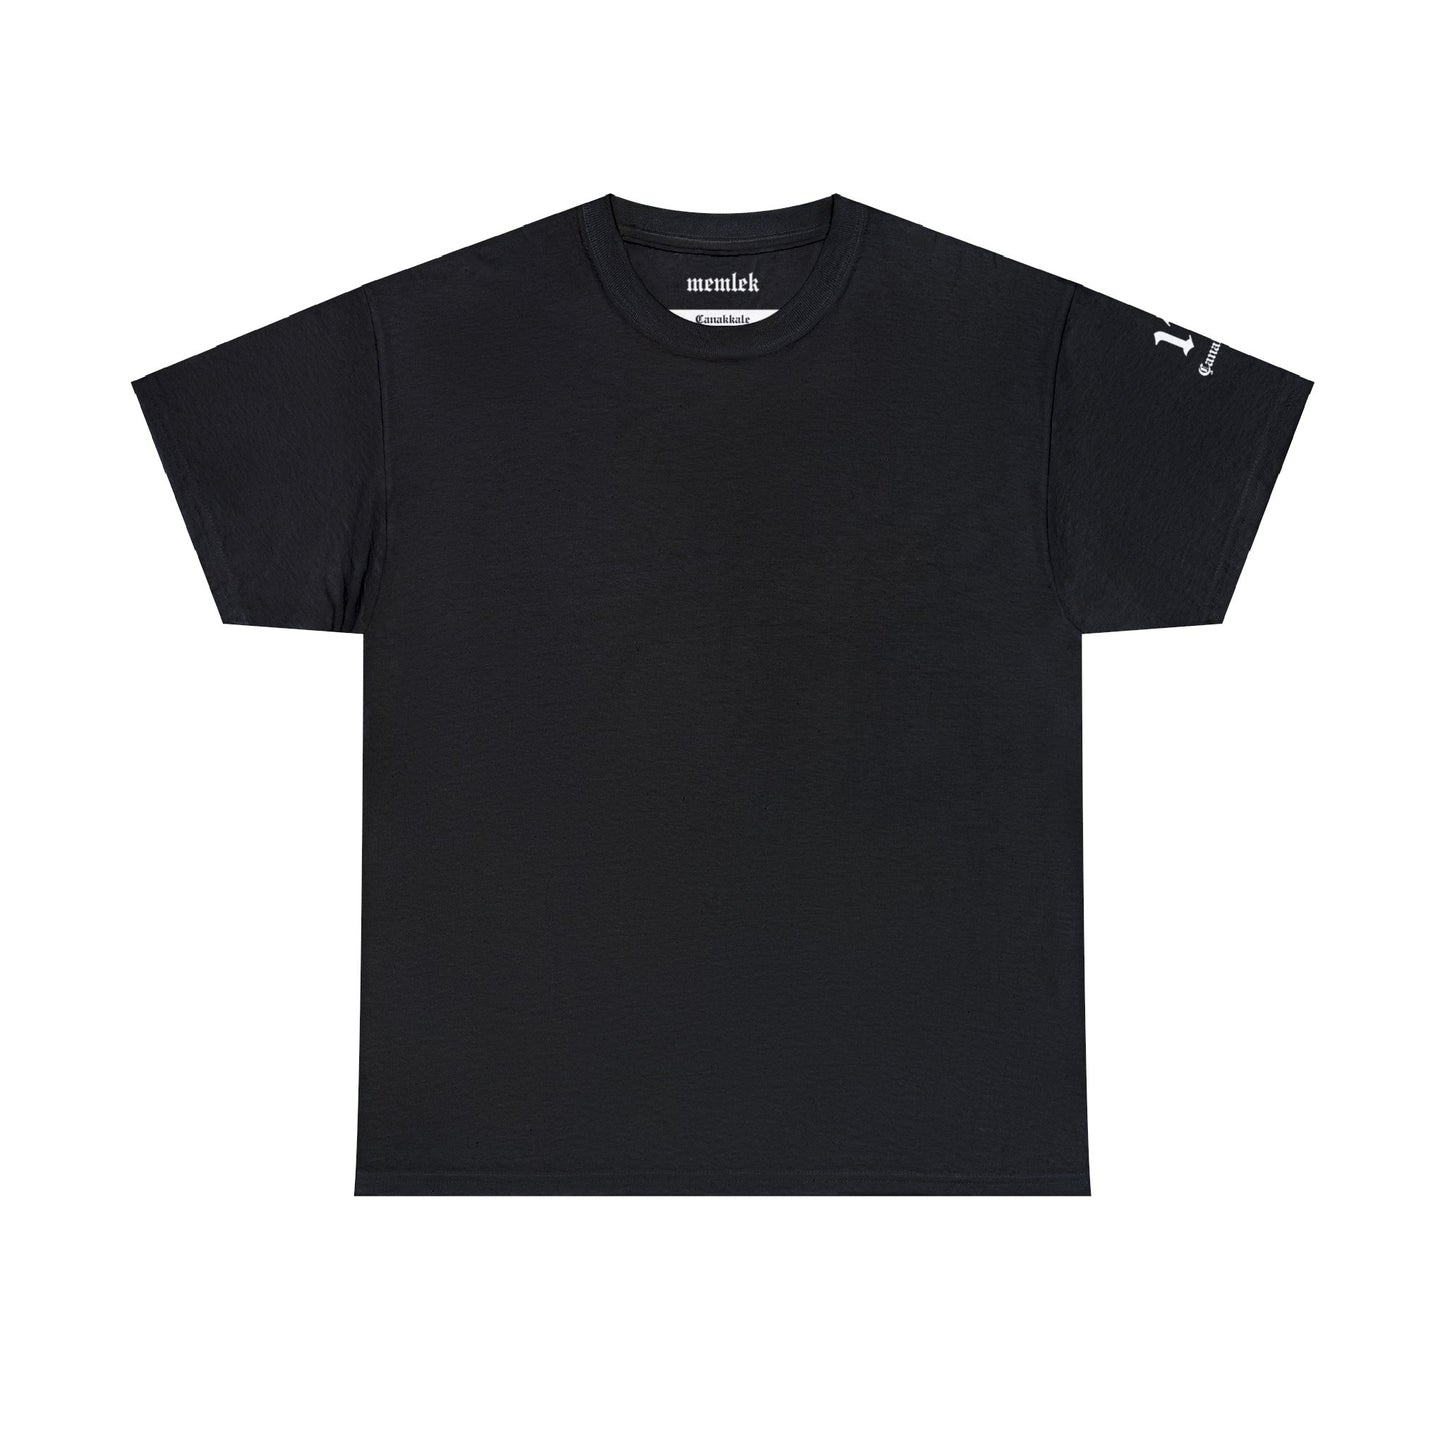 İlçem - 17 Çanakkale - T-Shirt - Back Print - Black